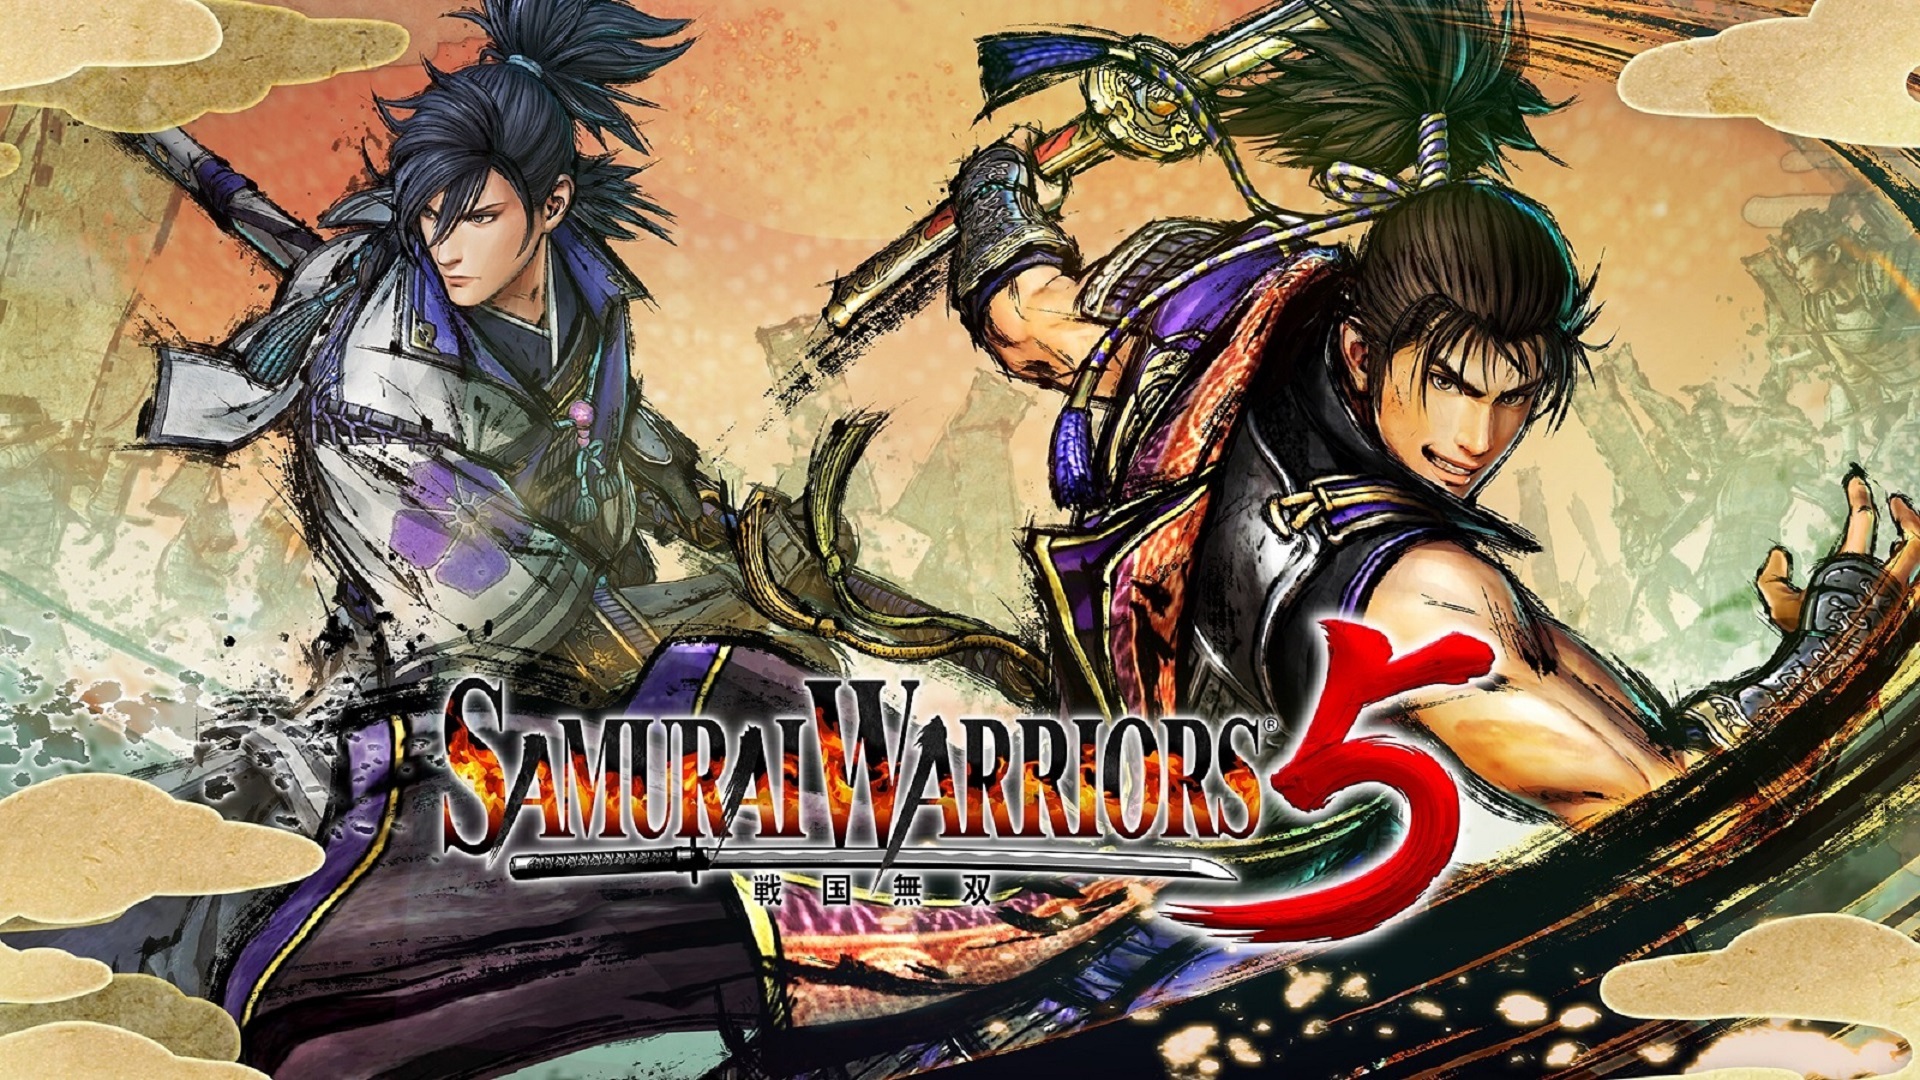 Guerreiros samurais 5